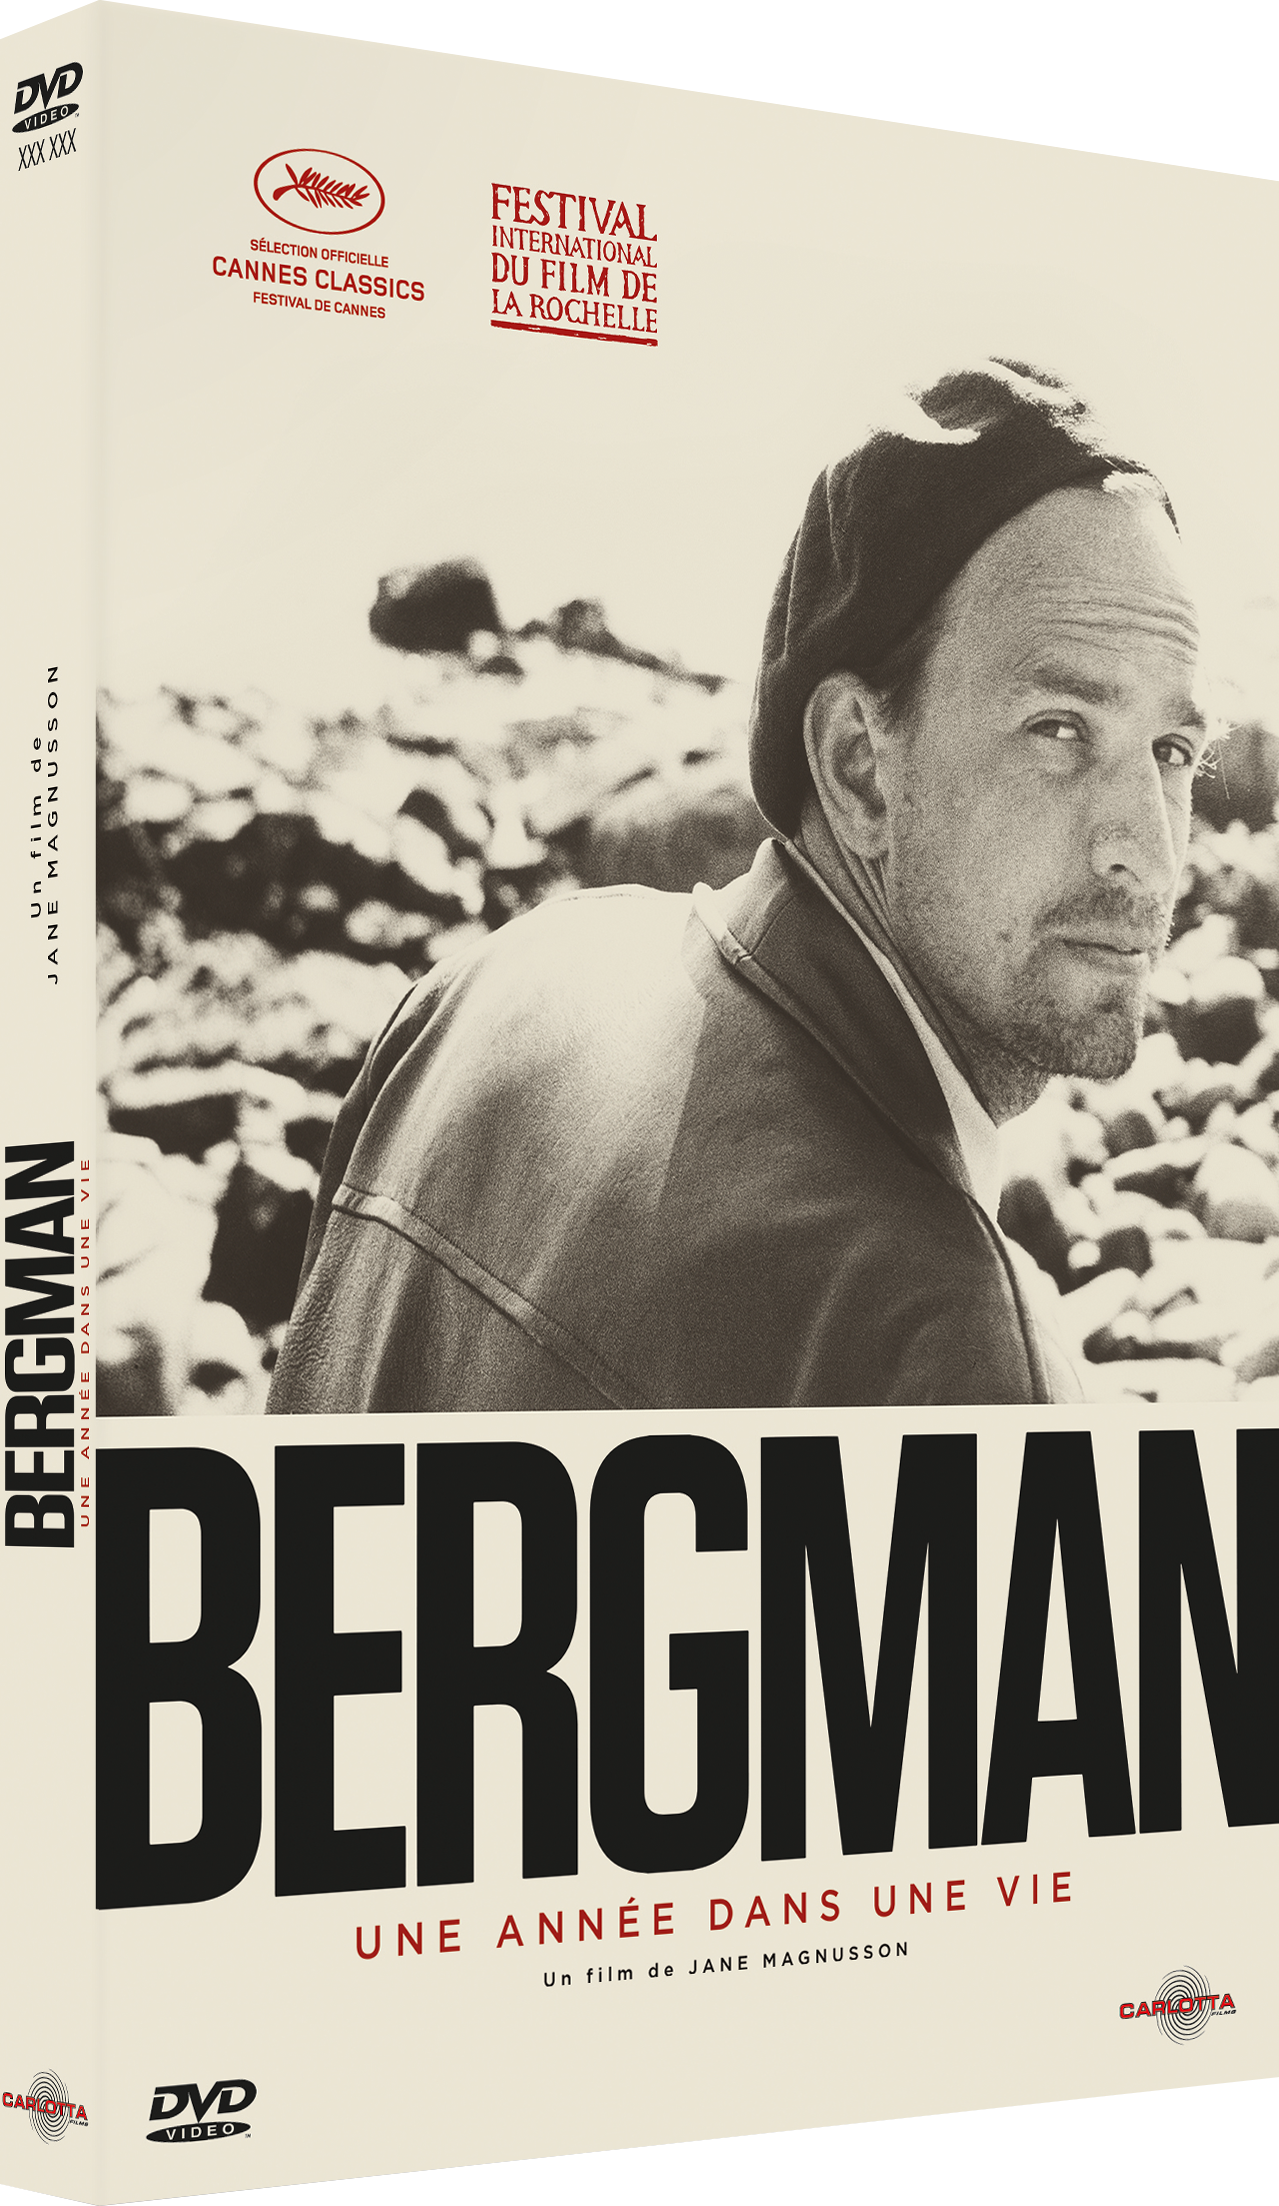 Bergman, une année dans une vie de Jane Magnusson - CARLOTTA FILMS - La Boutique